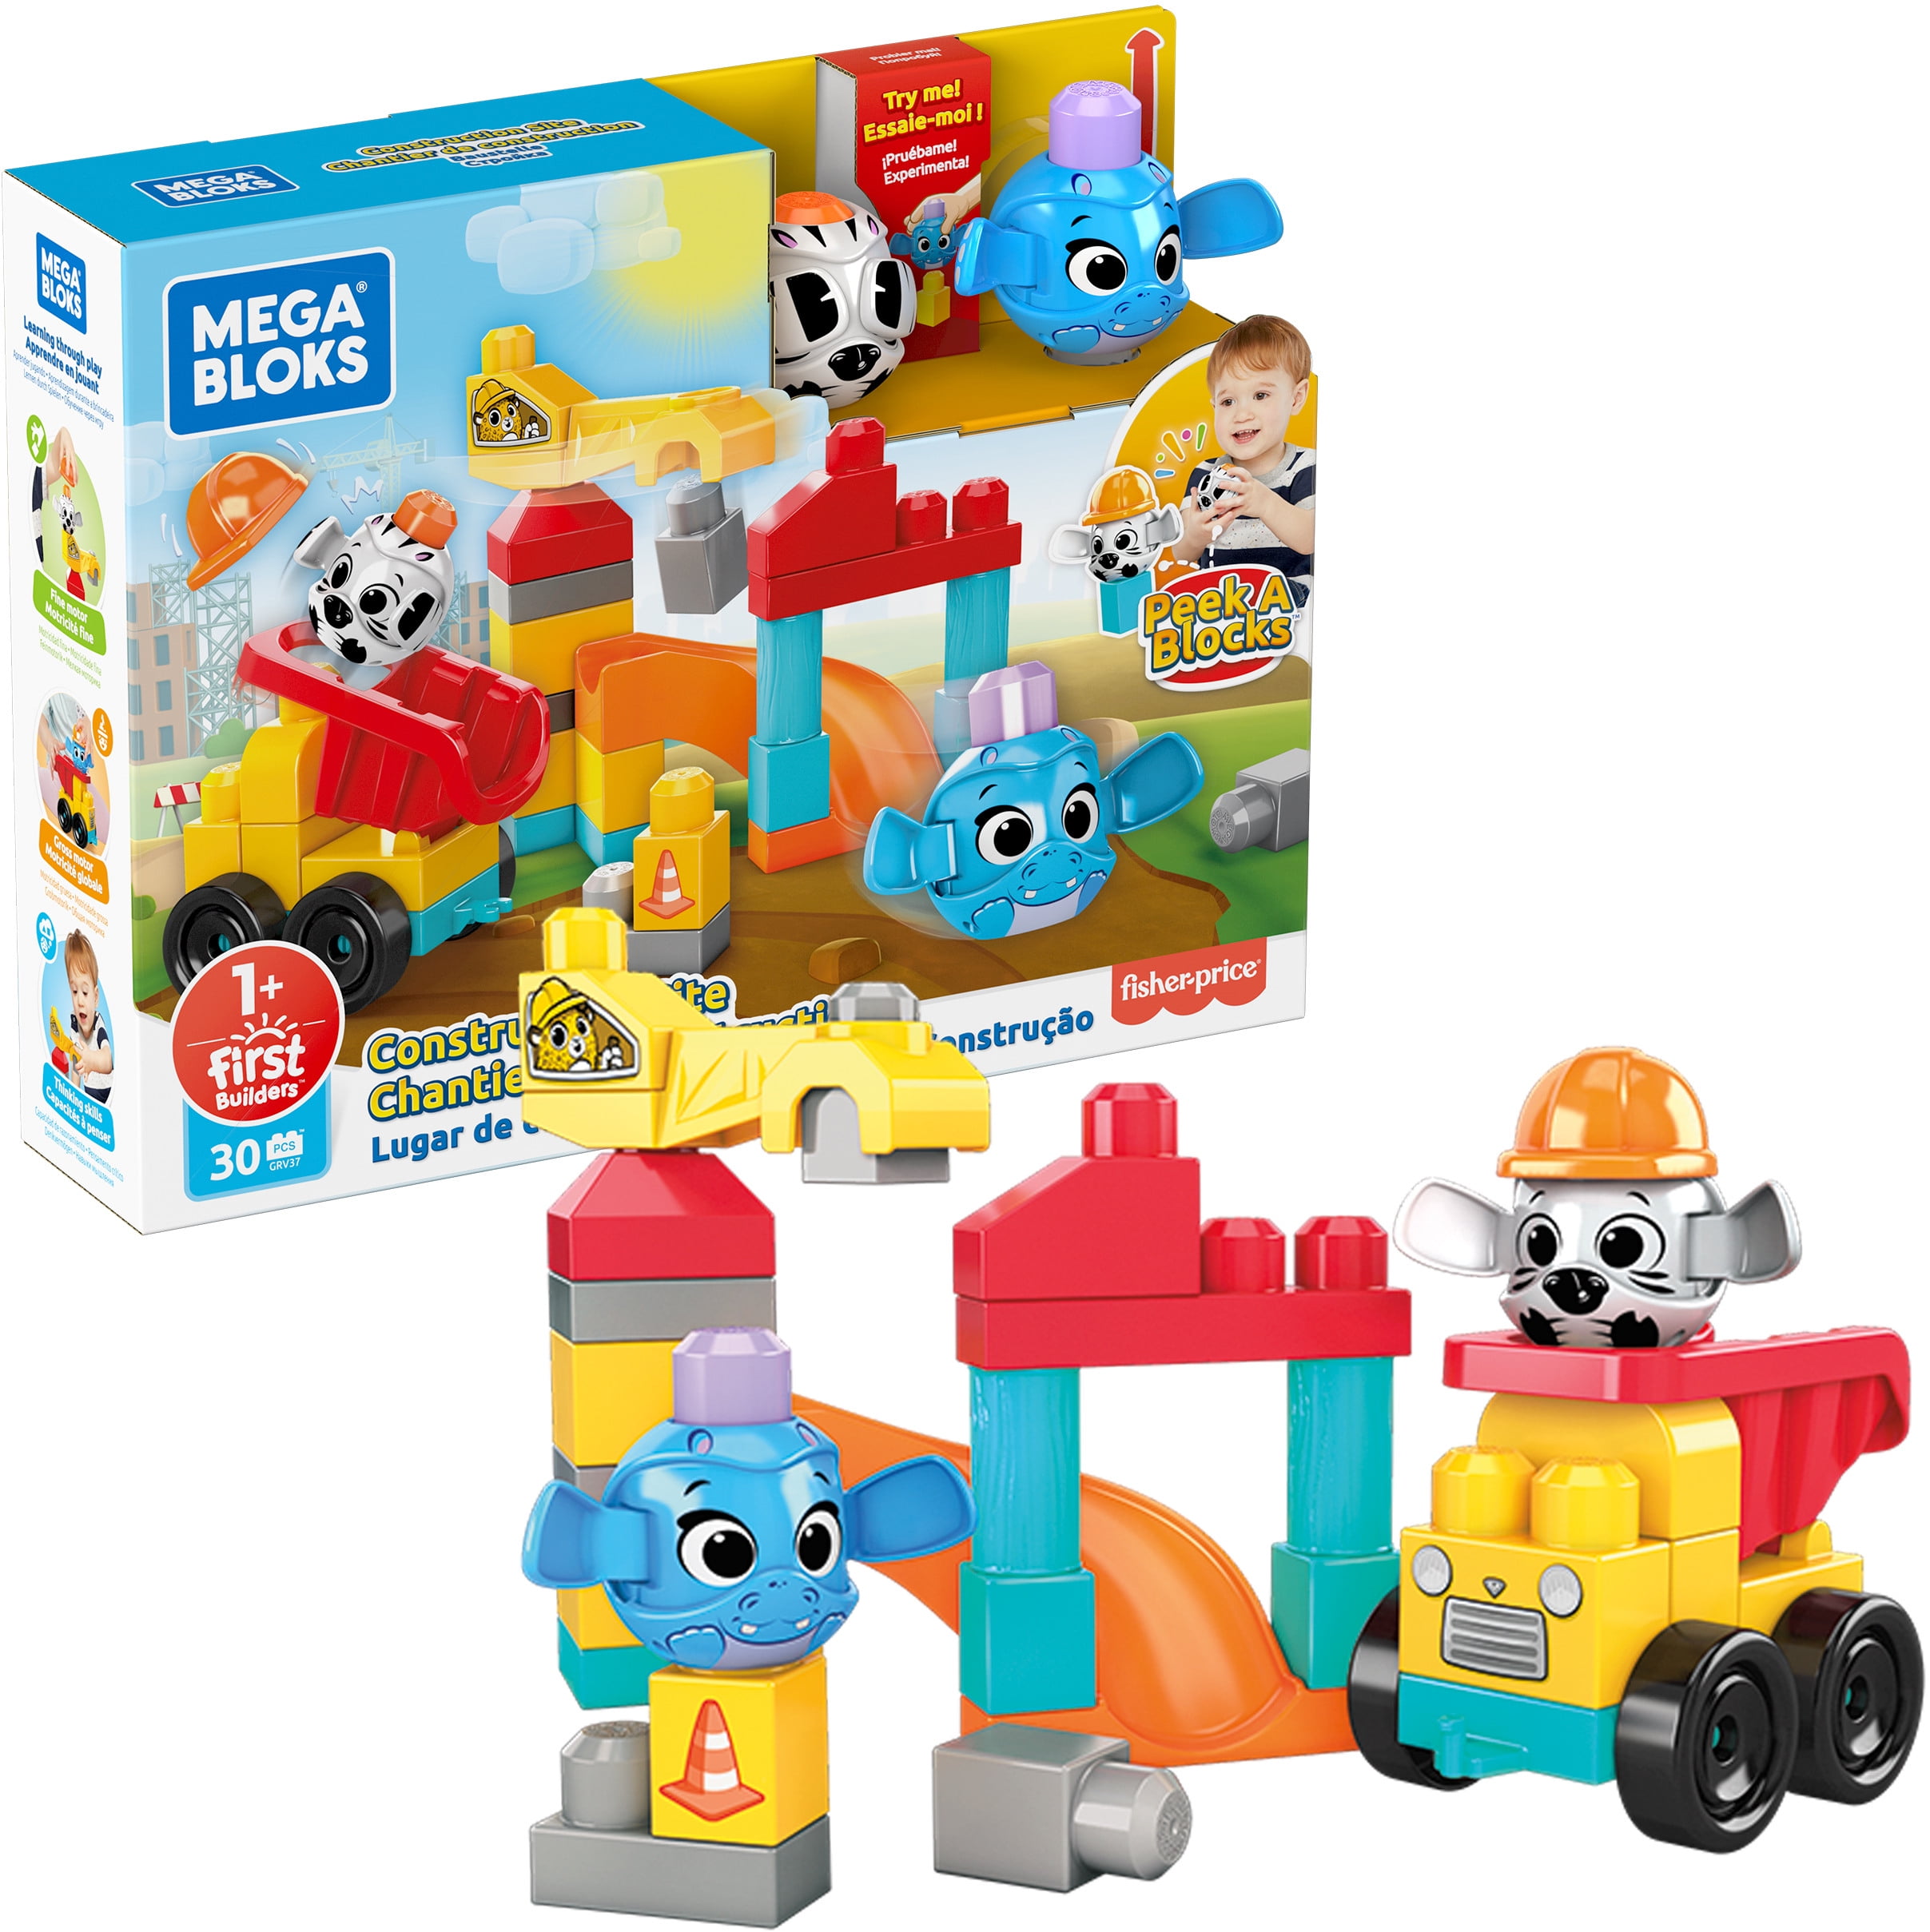 Puzzle Toys Children Accessories 16*16 Point Building Blocks Base Plates Plastic 